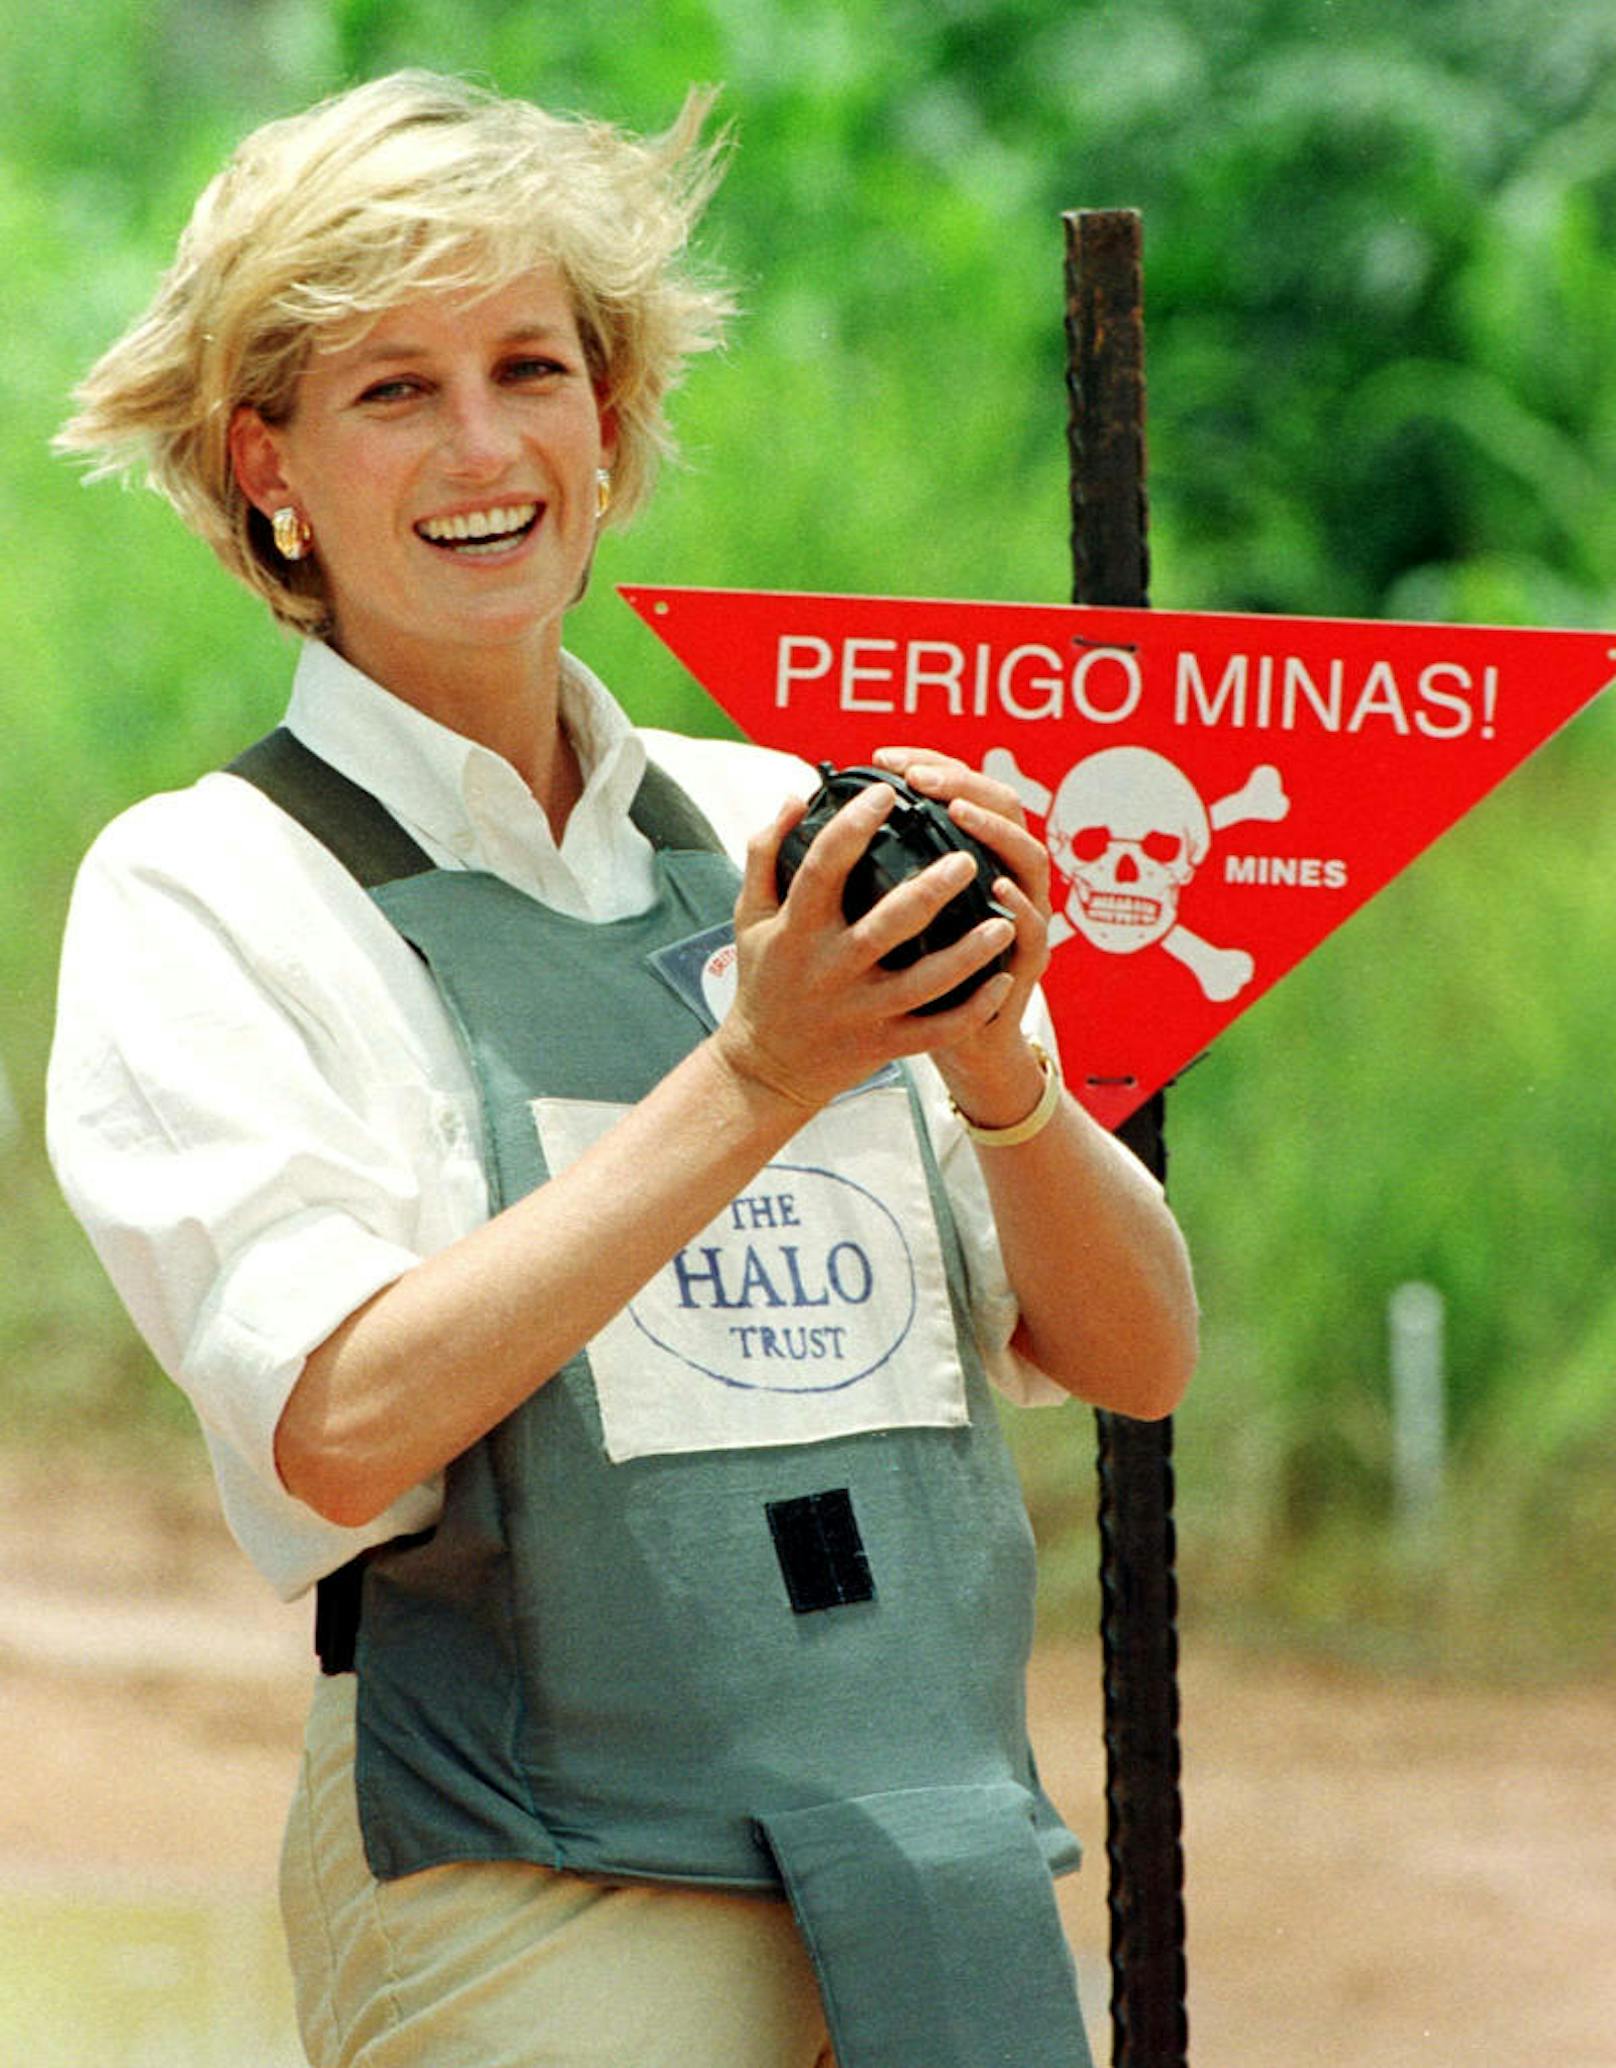 Kein Angst zeigen: Hier hält Diana eine der hochgefährlichen Landminen. Minen führten in den letzten 30 Jahren zum Tod von rund einer Million Menschen. Davon war ein Fünftel Soldaten und vier Fünftel Zivilisten, die den Minen oft erst nach Beendigung des Konflikts zum Opfer fielen. Insgesamt sind ca. 25 % der Opfer Kinder...